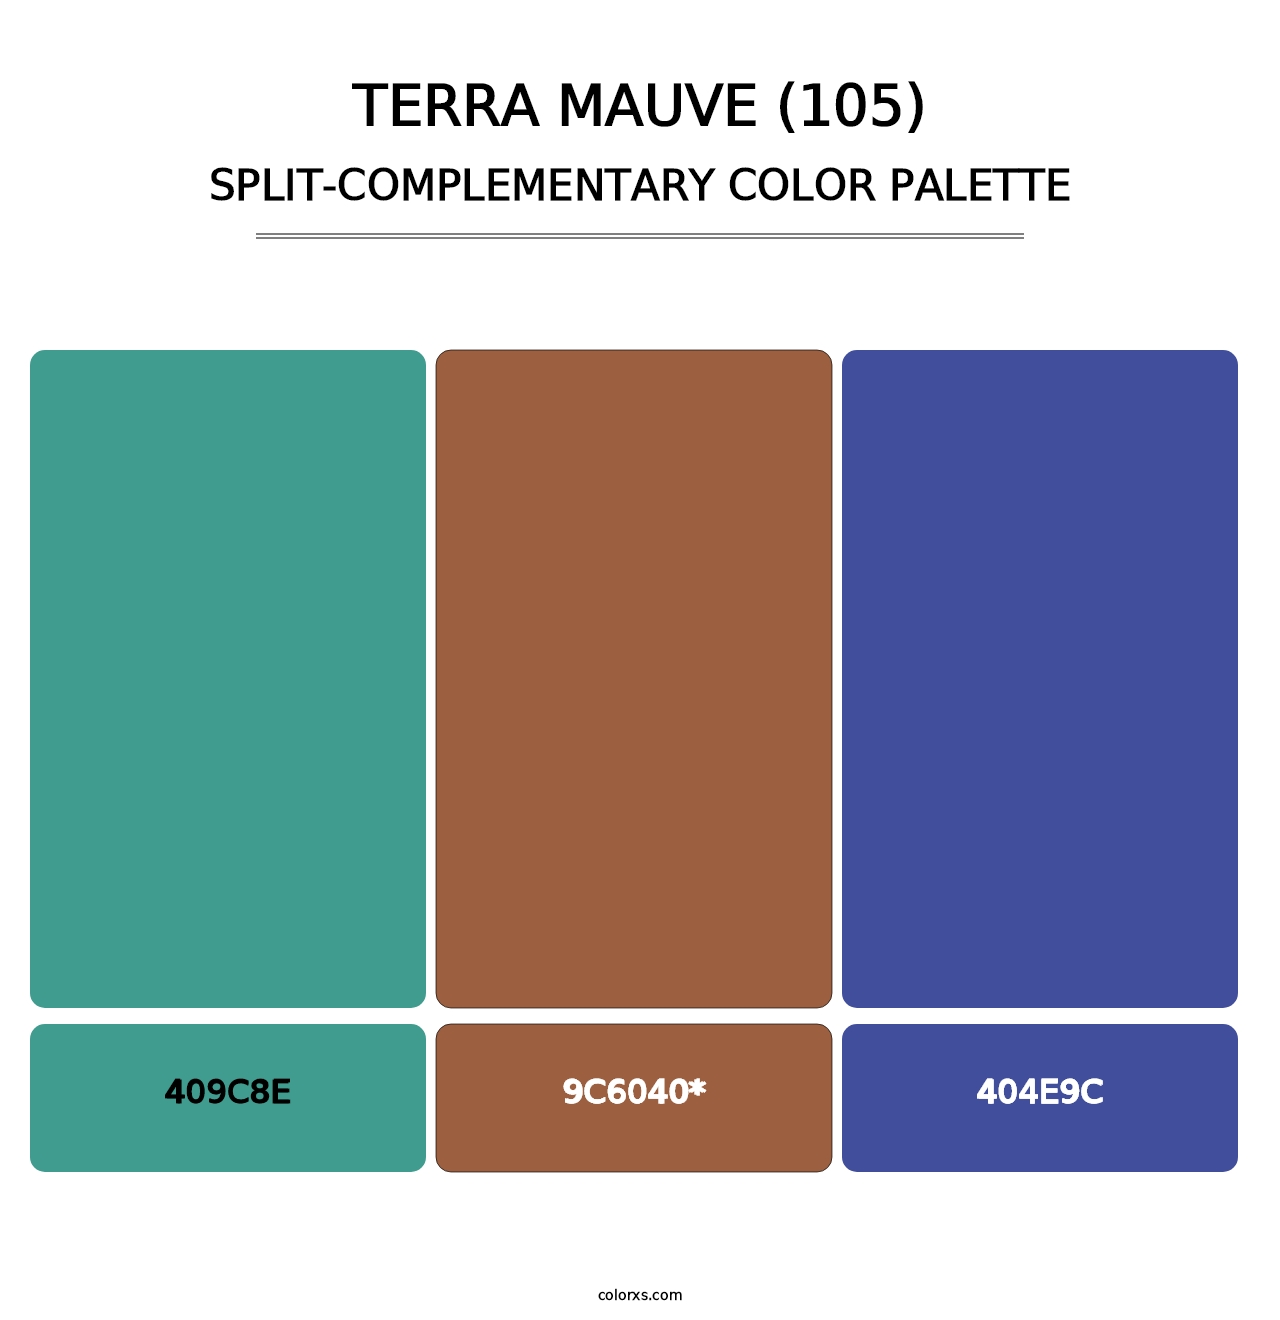 Terra Mauve (105) - Split-Complementary Color Palette